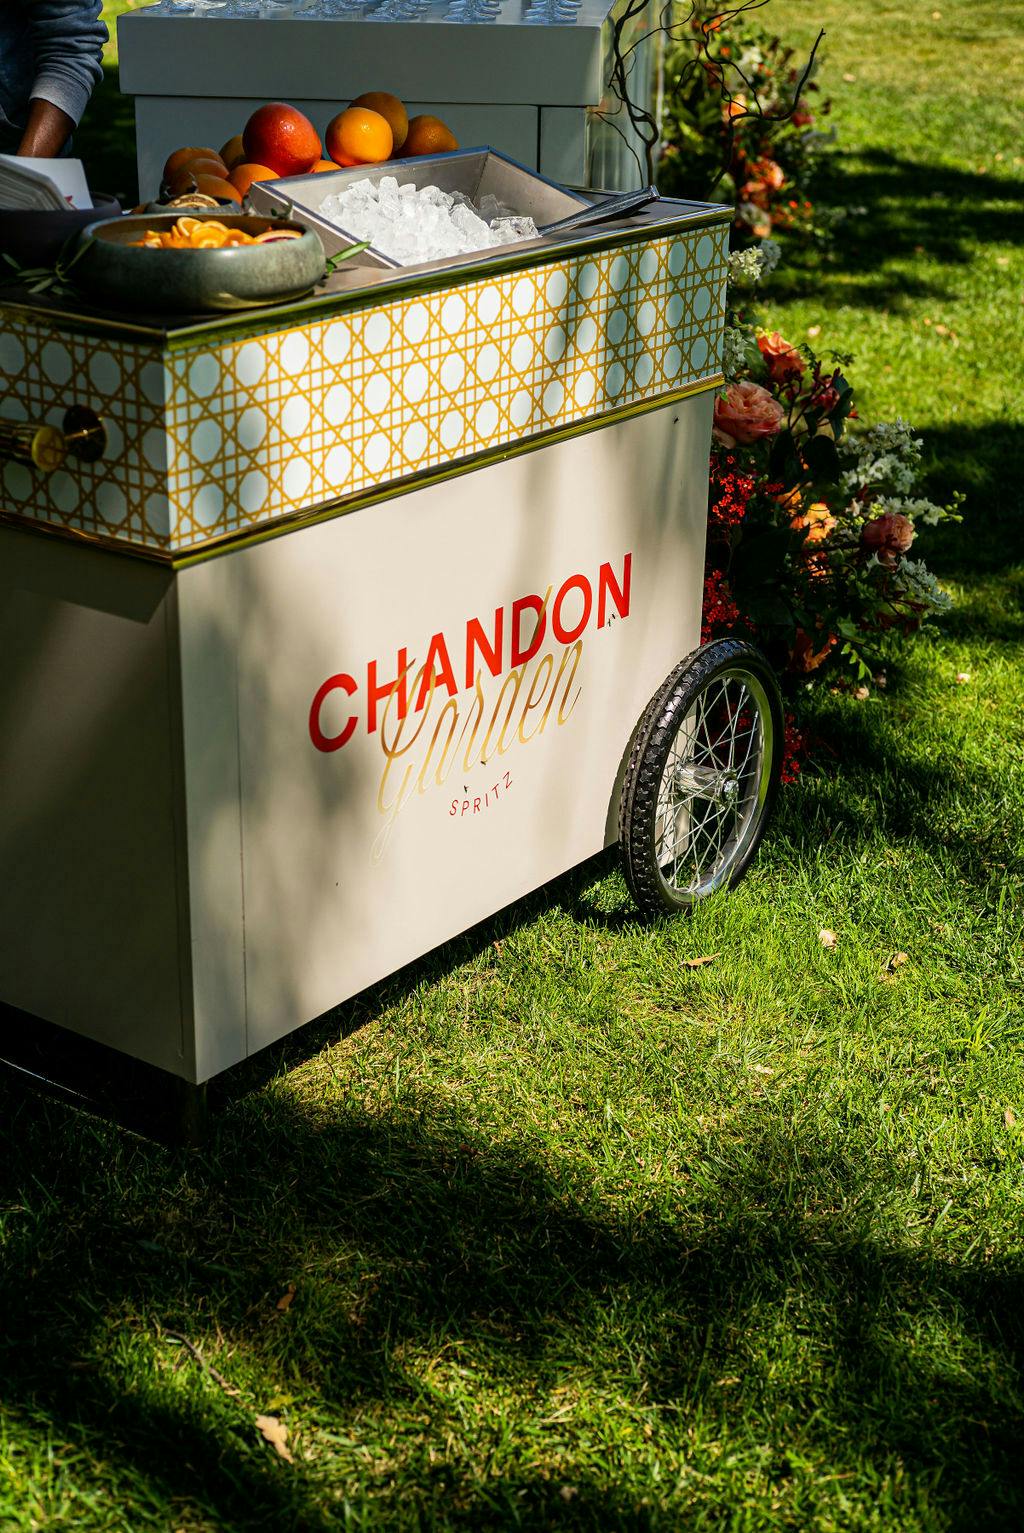 chandon garden spritz event